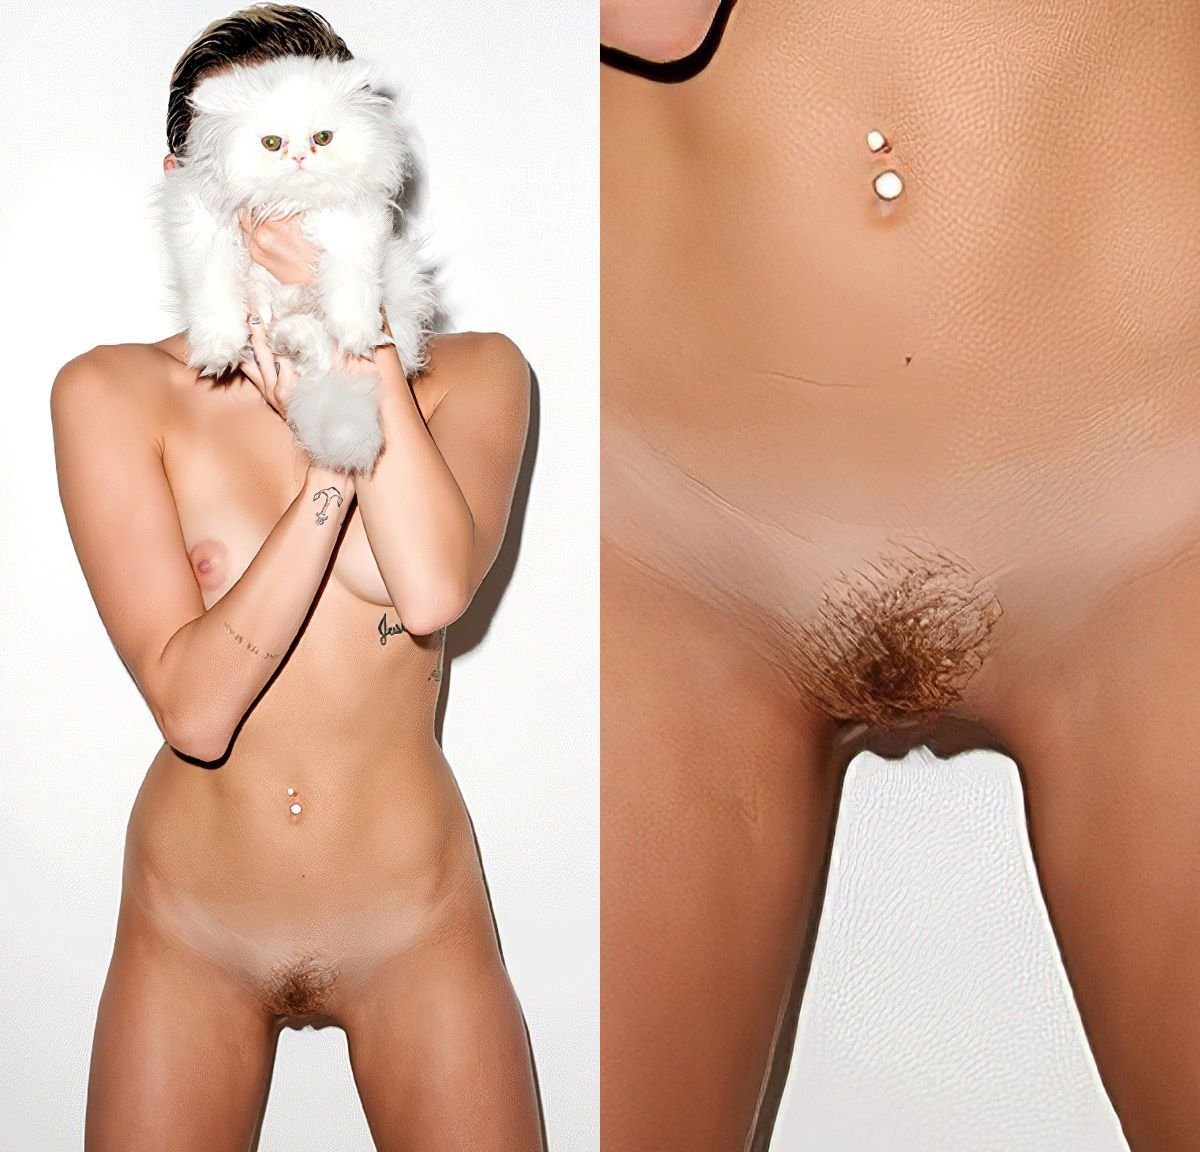 Porno nackt miley cyrus Miley Cyrus